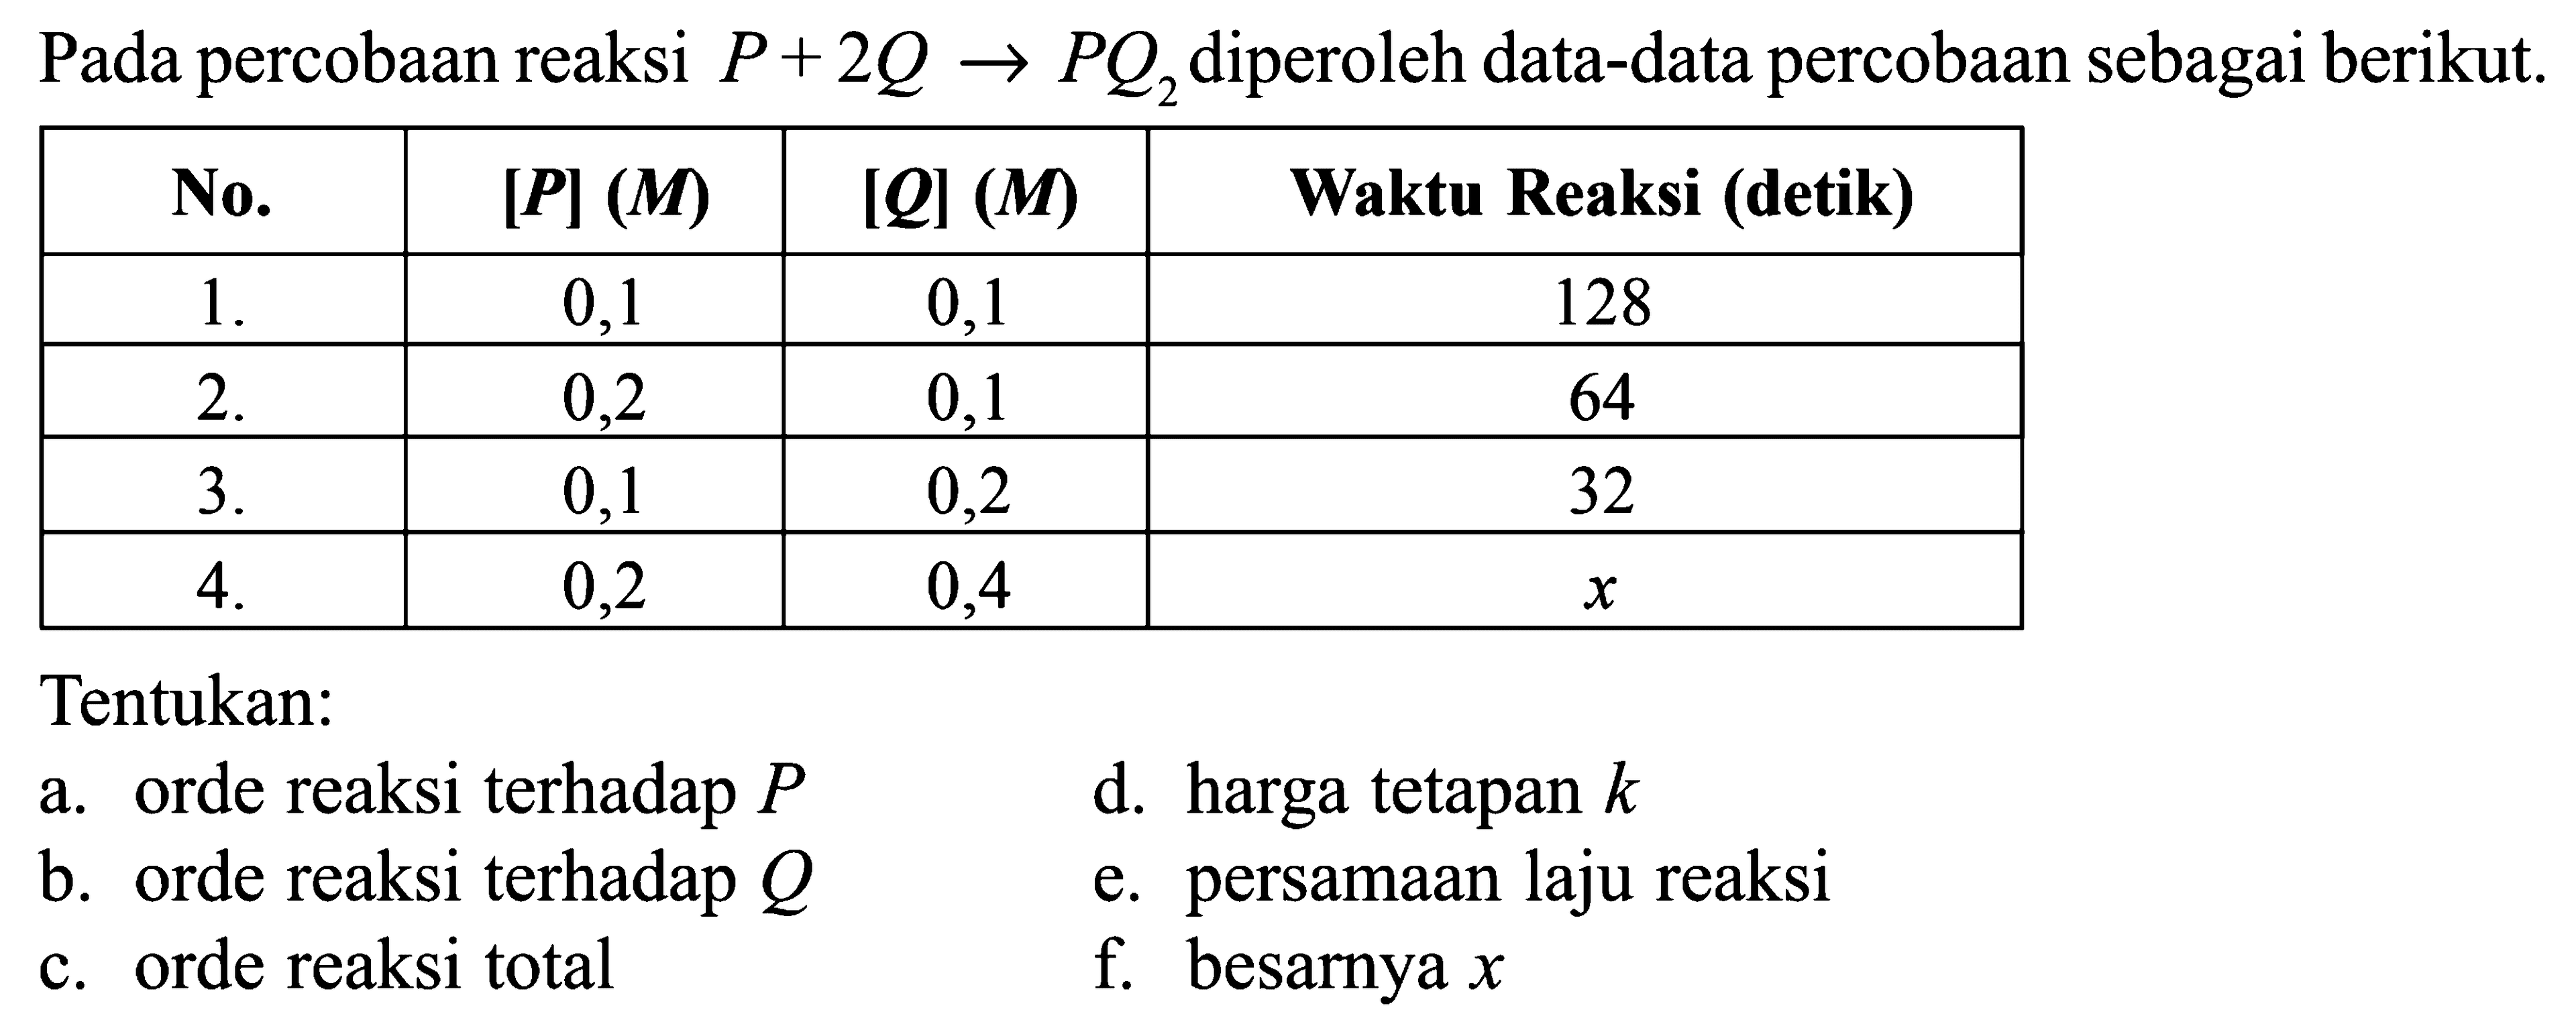 Pada percobaan reaksi P + 2Q -> PQ2 diperoleh data-data percobaan sebagai berikut. No. [P] (M) [Q] (M) Waktu Reaksi (detik) 1. 0,1 0,1 128 2. 0,2 0,1 64 3. 0,1 0,2 32 4. 0,2 0,4 x Tentukan: a. orde reaksi terhadap P b. orde reaksi terhadap Q c. orde reaksi total d. harga tetapan k e. persamaan laju reaksi f. besarnya x 